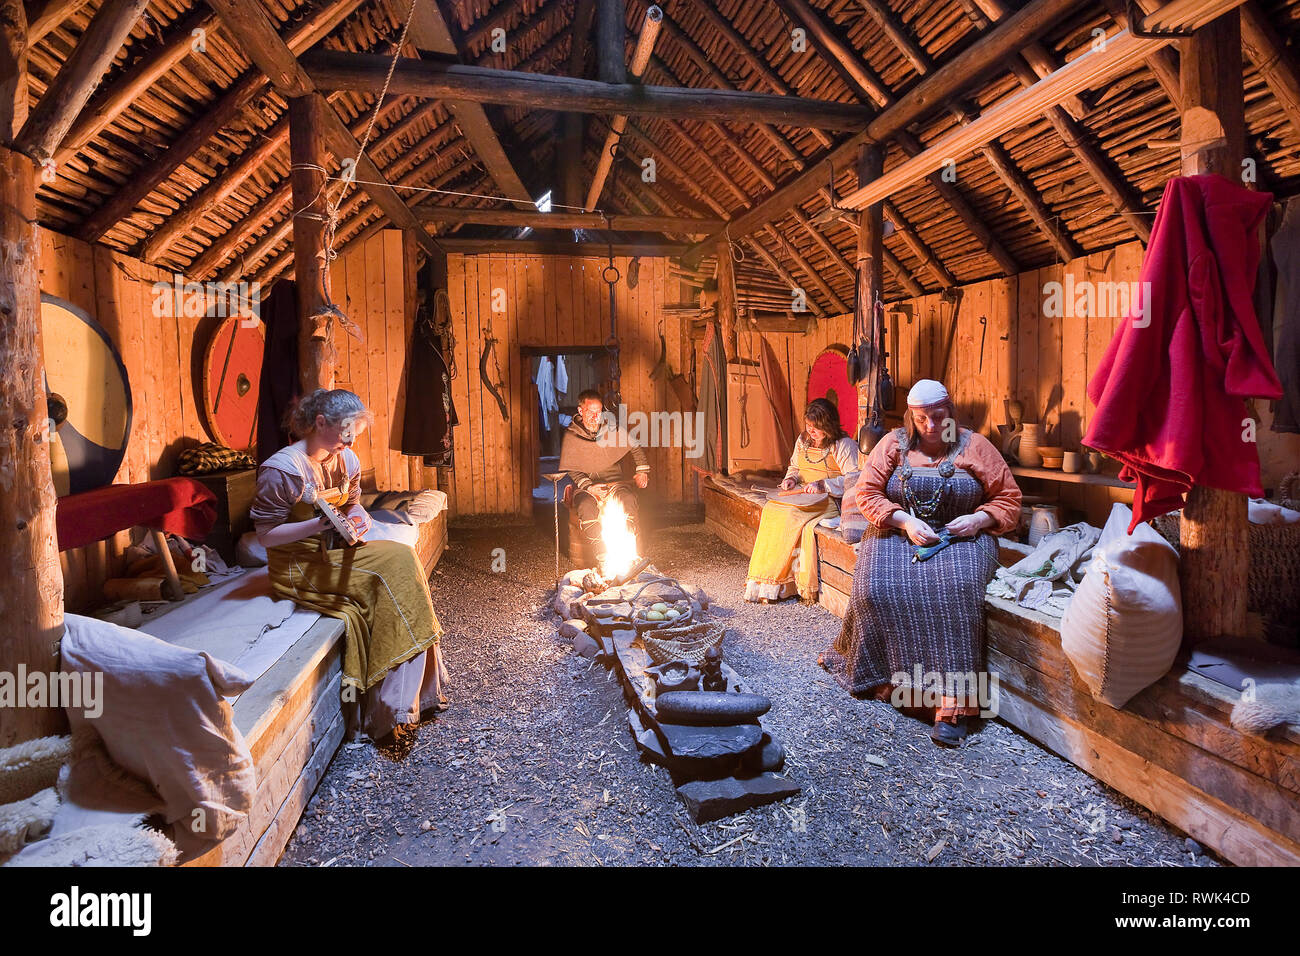 Parcs Canada les interprètes en costumes d'effectuer des tâches traditionnelles à l'intérieur d'une maison longue Viking recréé à L'Anse aux Meadows National Historic Site, L'Anse aux Meadows, Terre-Neuve, Canada Banque D'Images